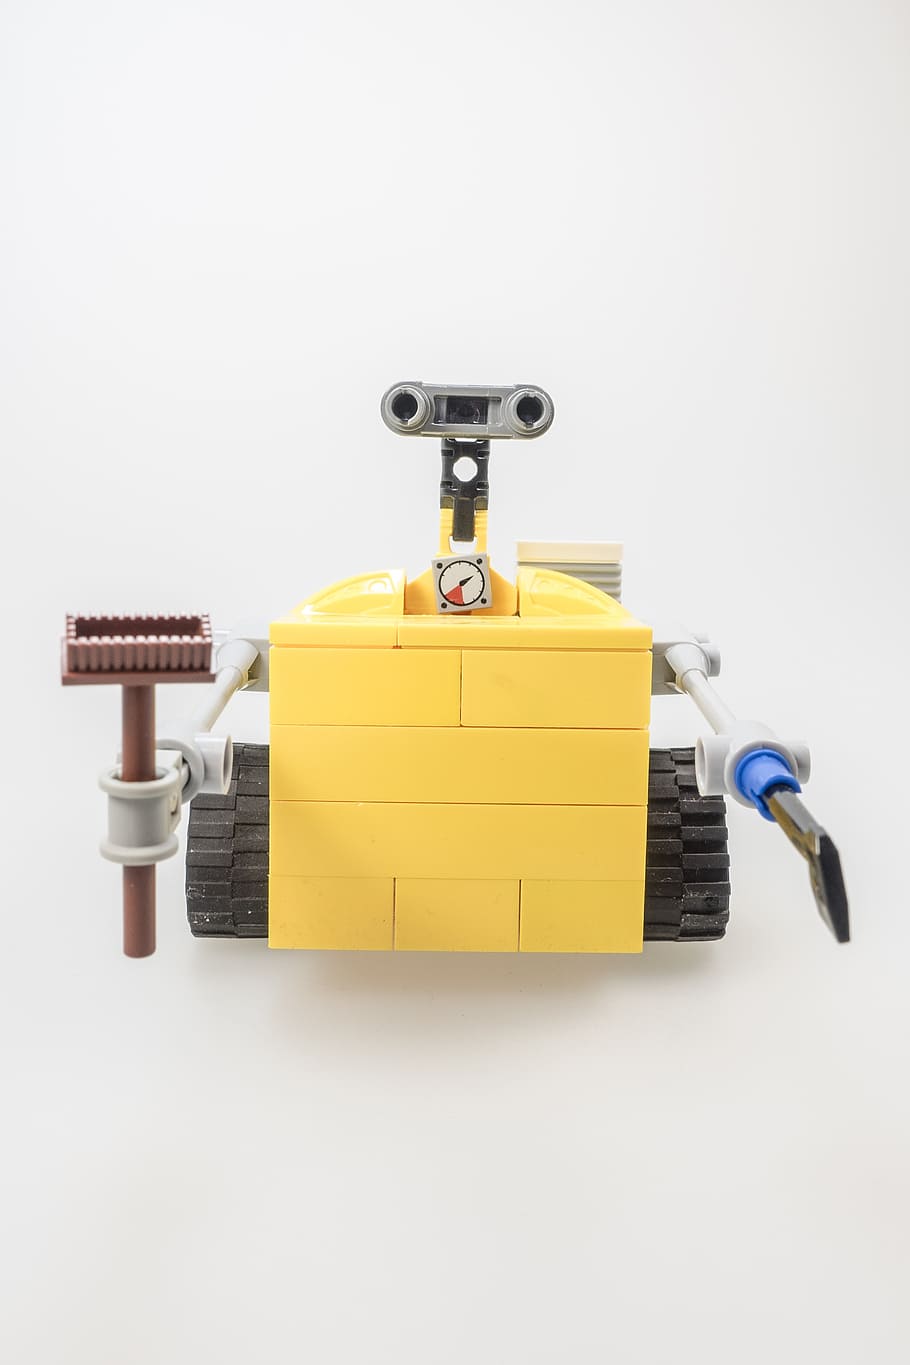 黄色, 灰色, 壁のおもちゃ, レゴ, 壁の図, カルト, コンピューター, ロボット, 機械, 制御